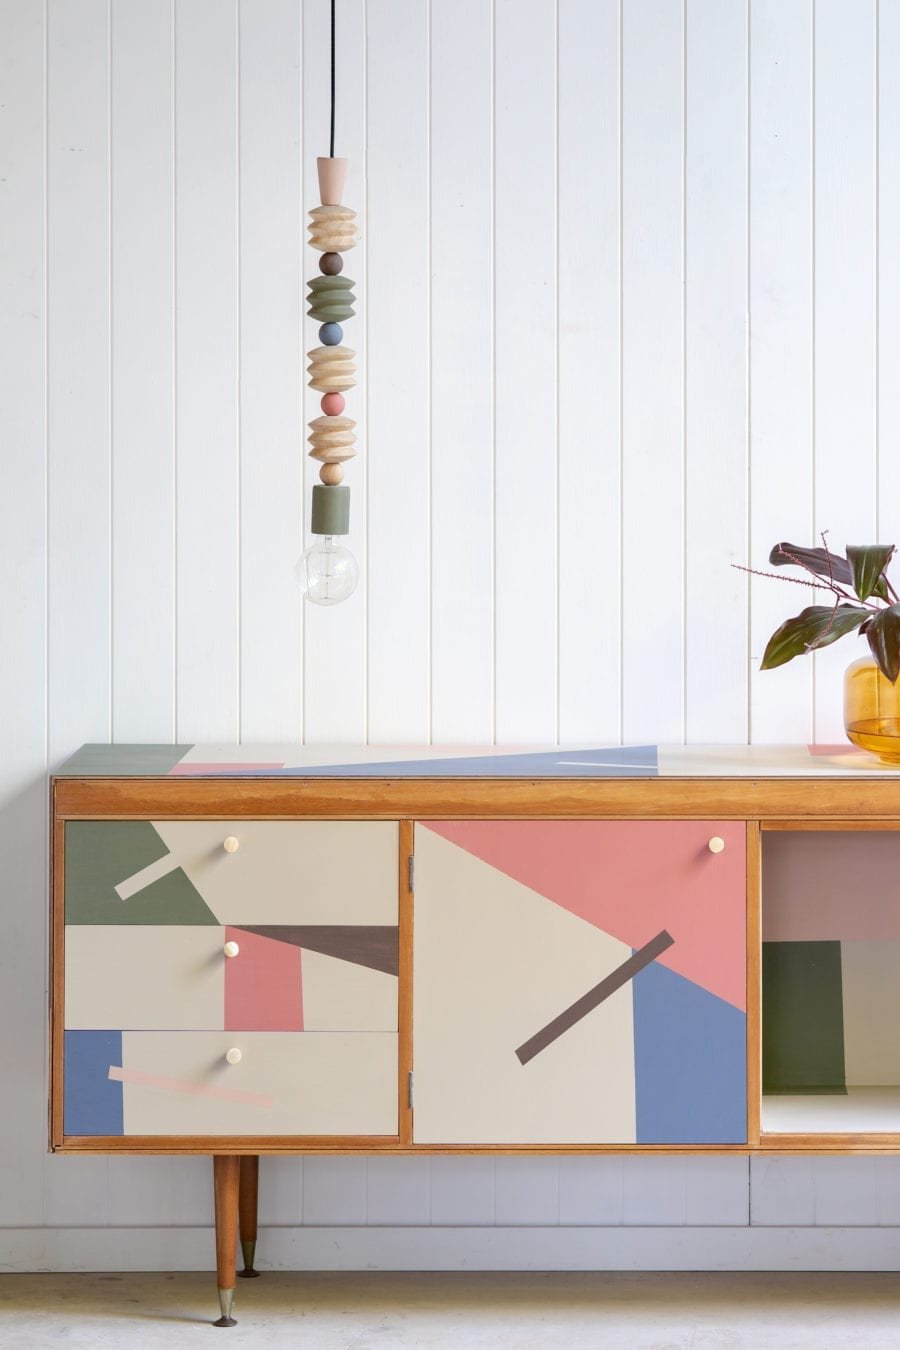 Mueble con frontales pintados con motivos geometricos con chalkpaint pintura a la tiza